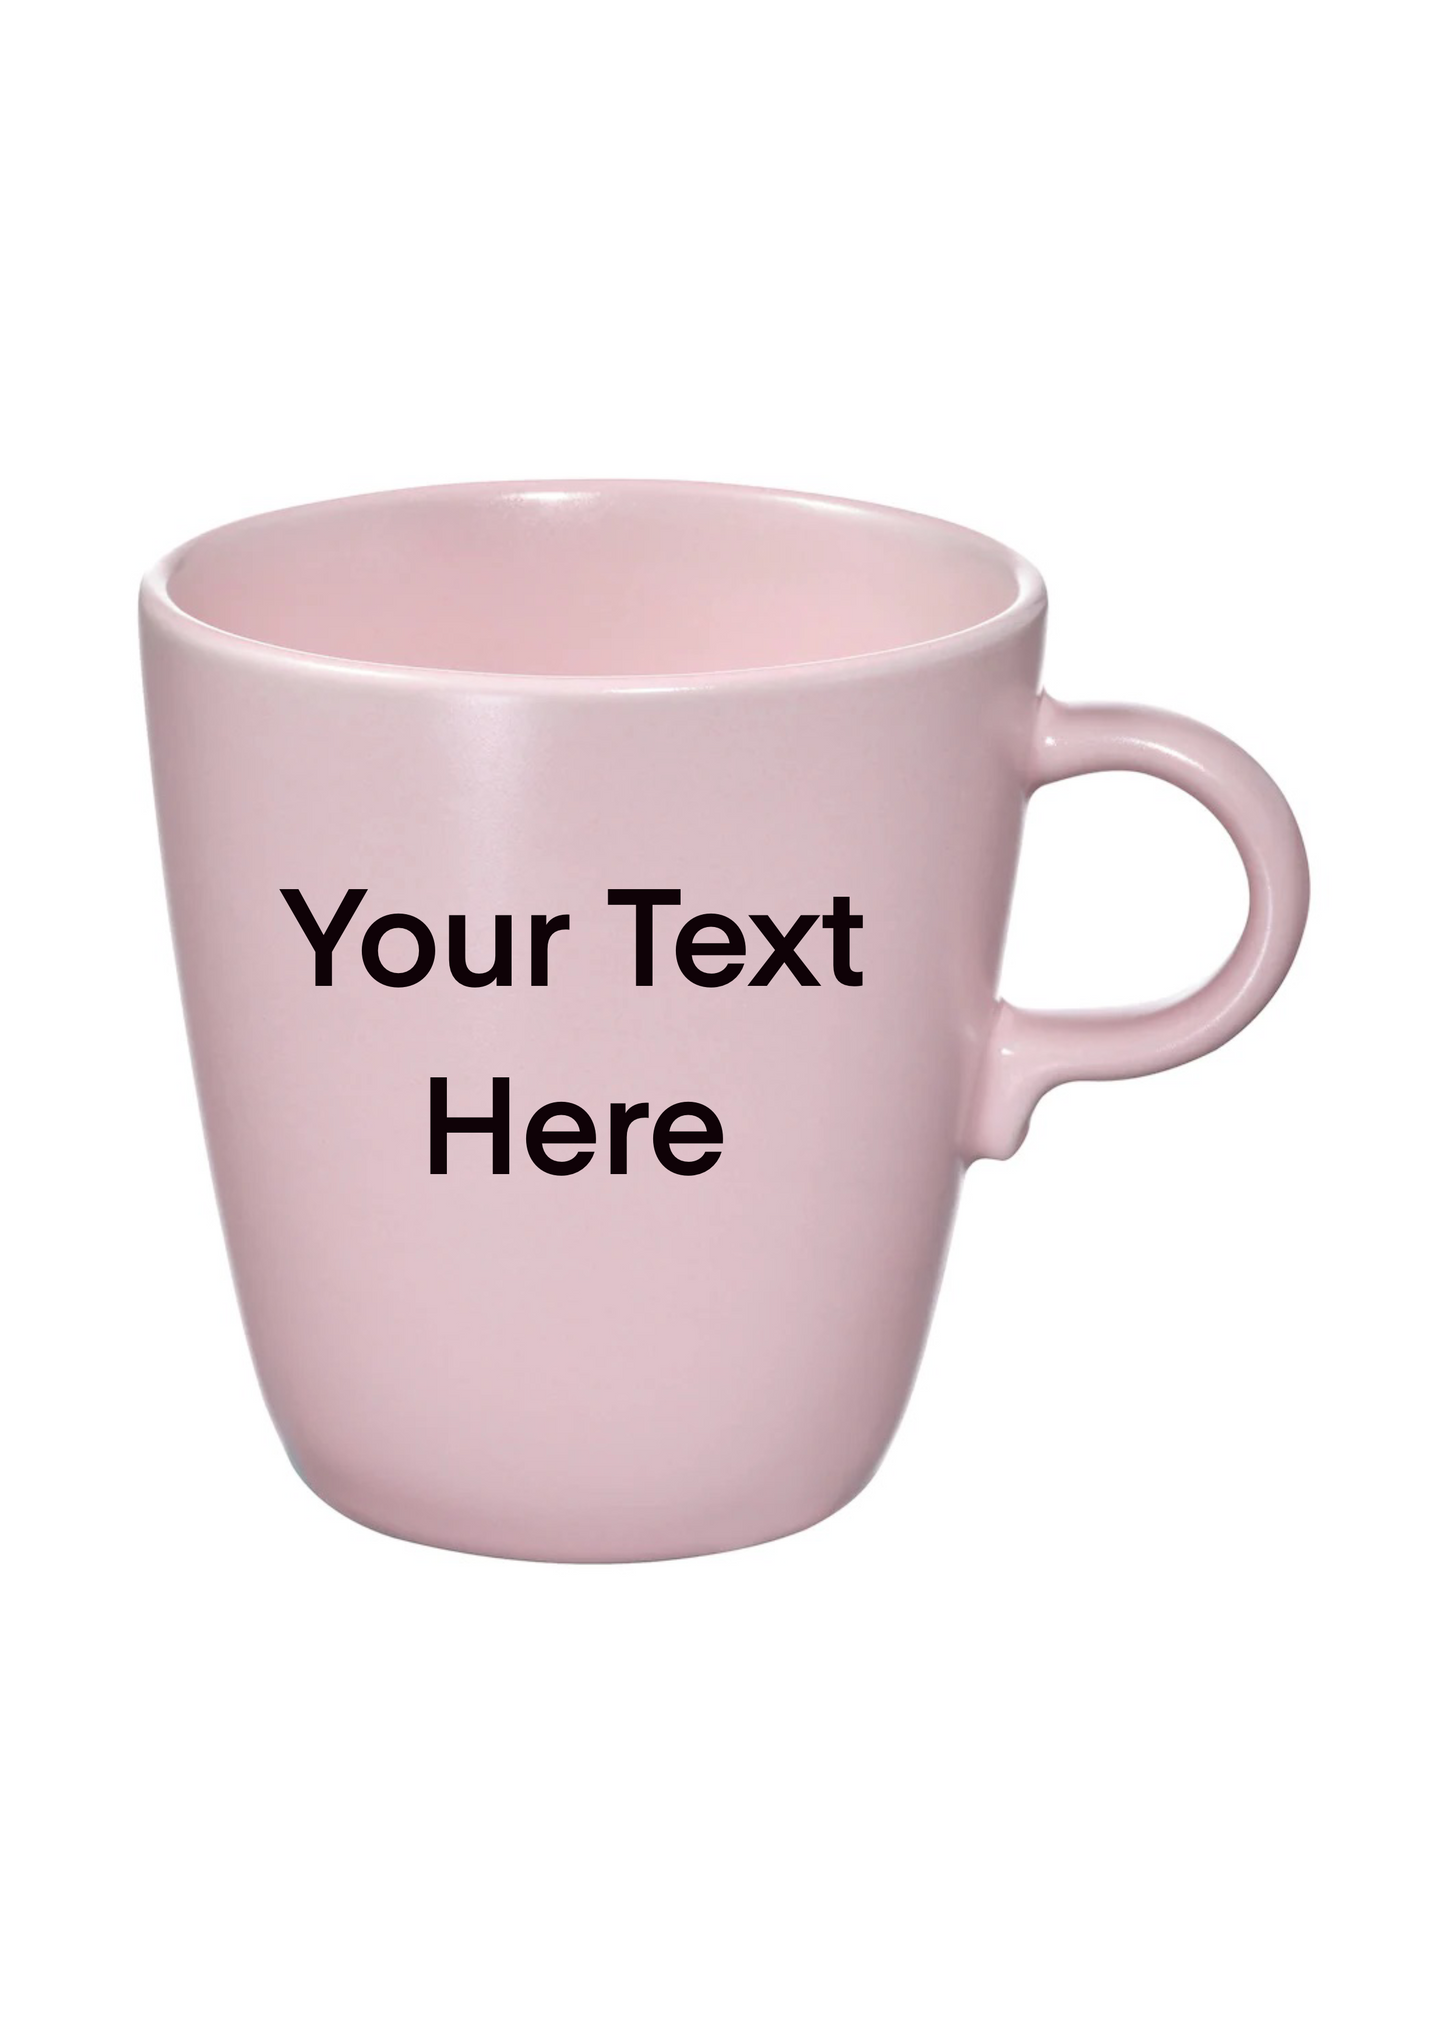 Customize mug kuwait, your text here mug kuwait, mug gift kuwait, coffee mug kuwait, tea mug kuwait